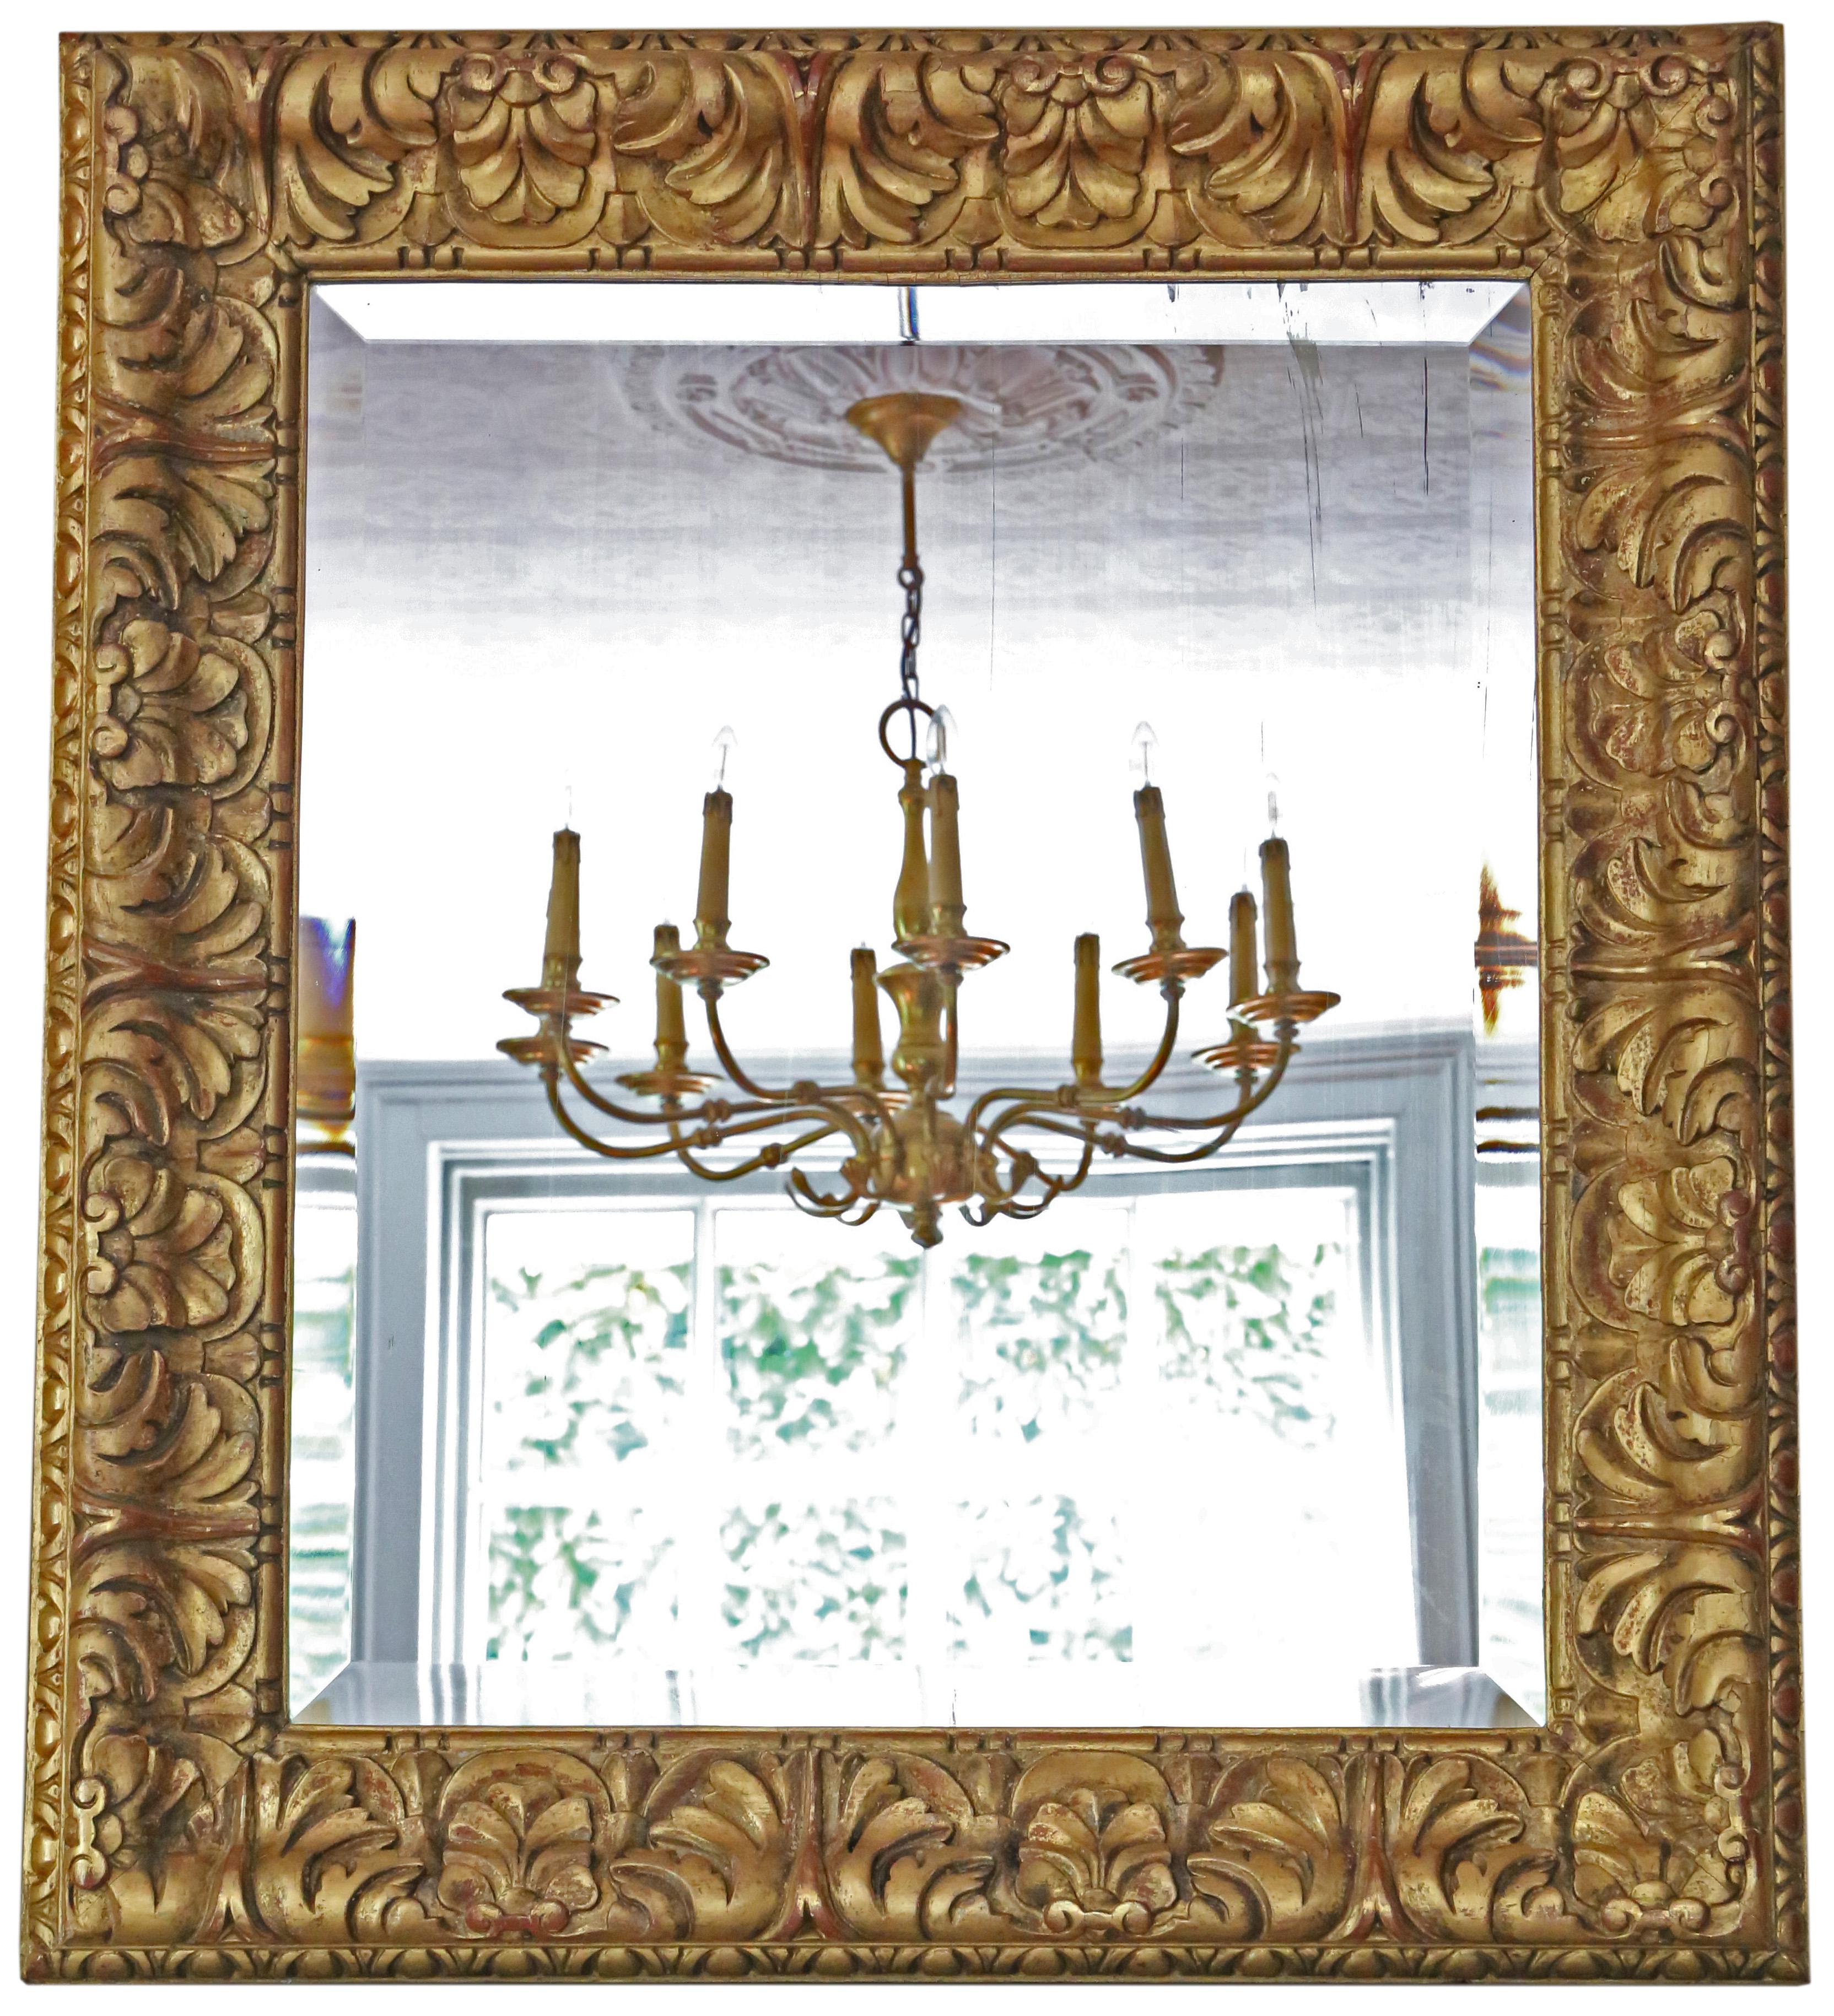 Miroir de cheminée ou mural ancien du 19ème siècle, de belle qualité, avec des dorures et un charme et une élégance remarquables.

Il s'agit d'un beau miroir rare et d'une belle trouvaille décorative.

Une trouvaille impressionnante et rare, qui